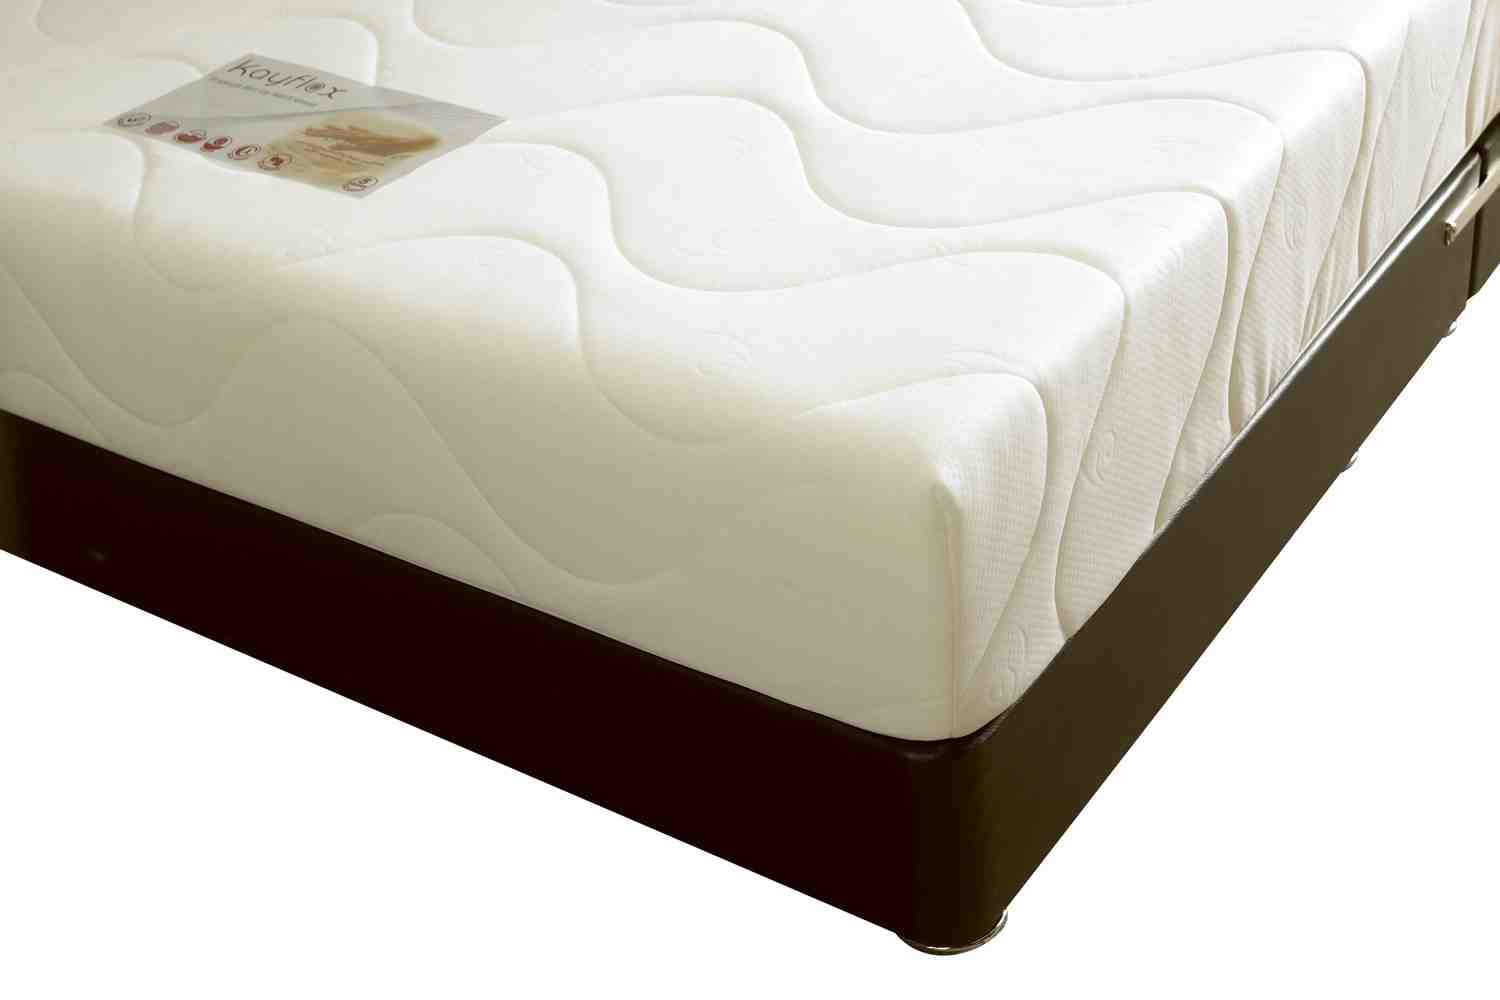 cheap foam mattress walmart